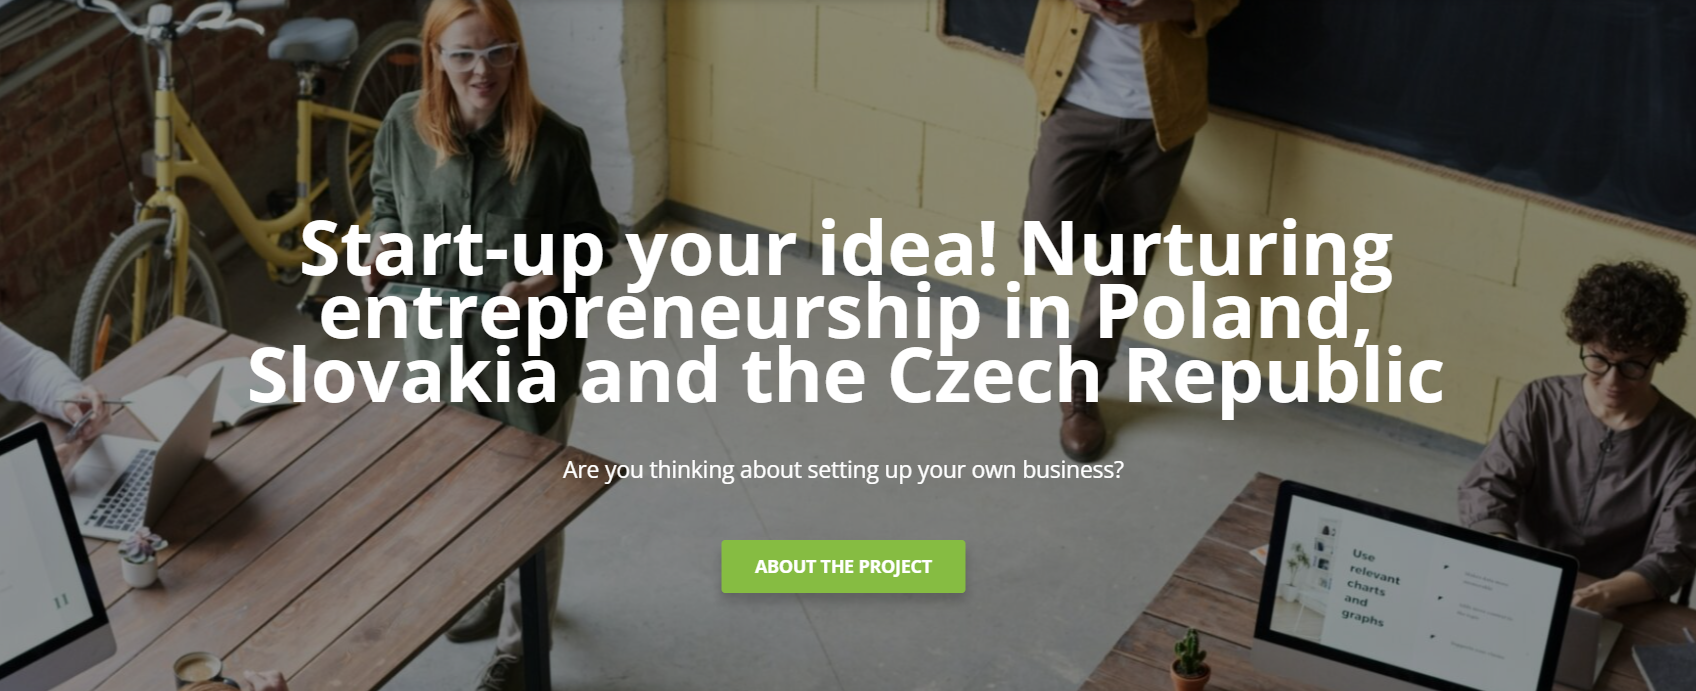 webinar start-up your idea